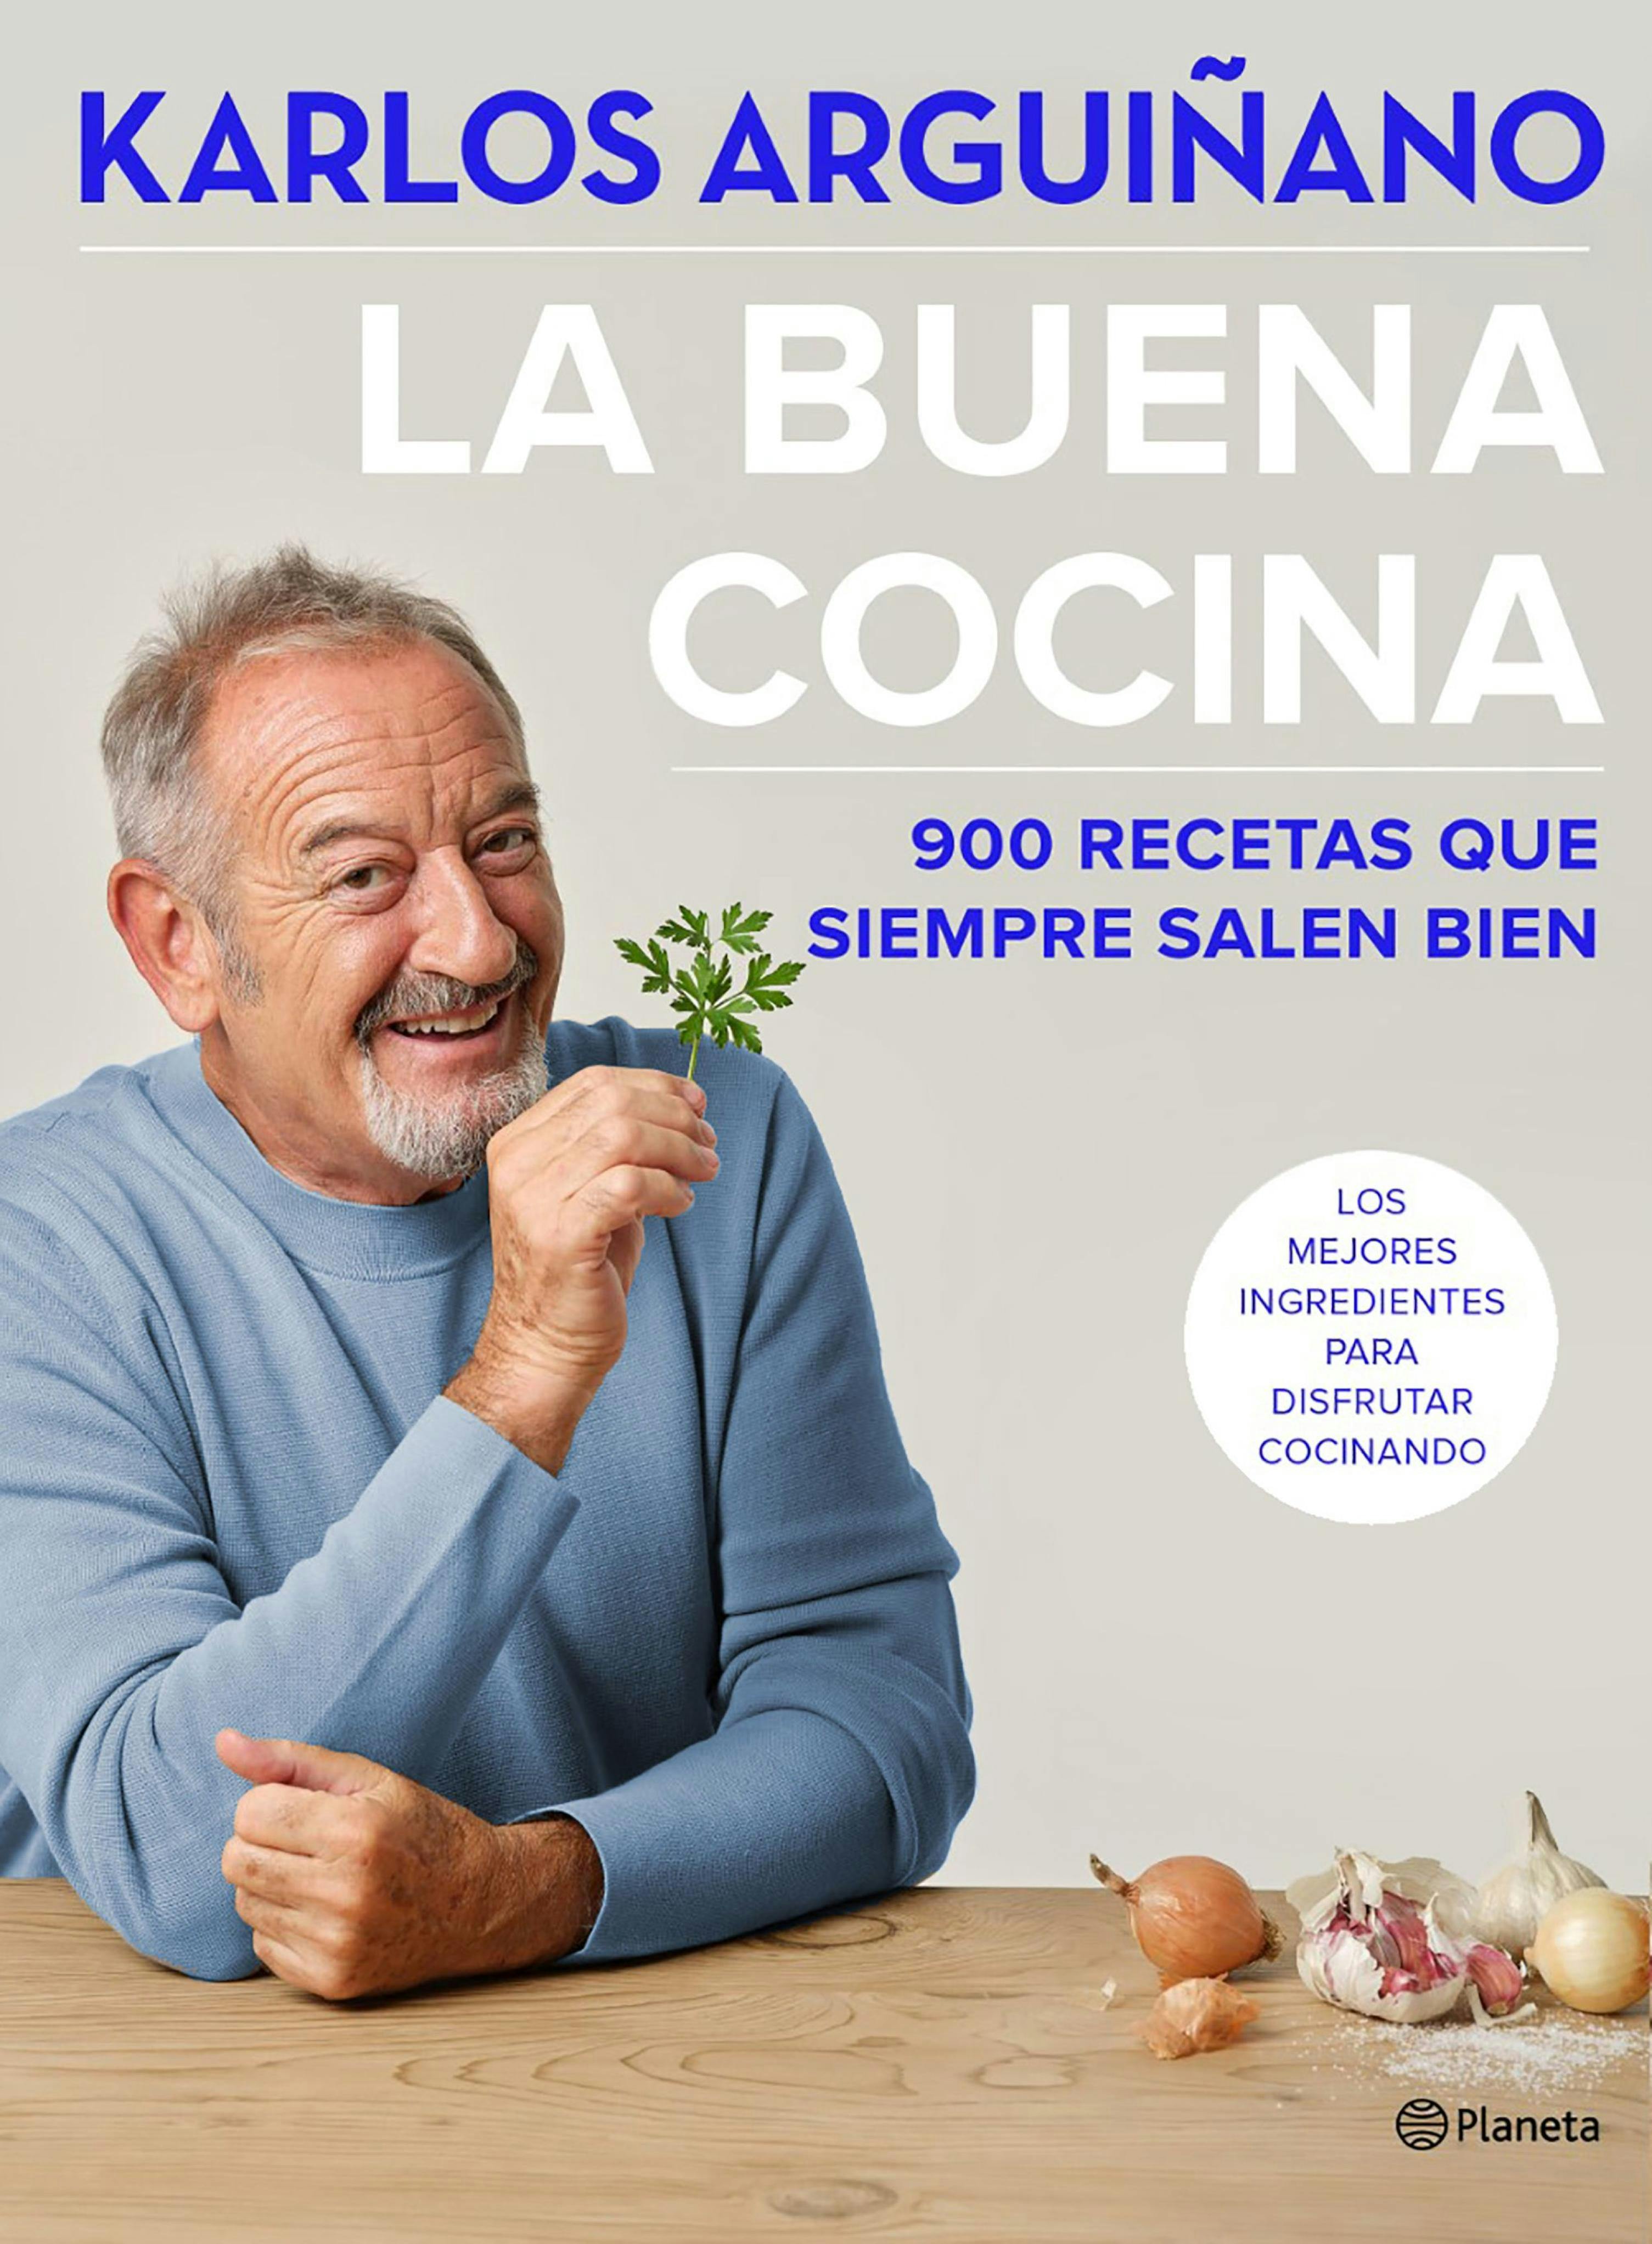 La buena cocina: 900 recetas que siempre salen bien - Karlos Arguiñano